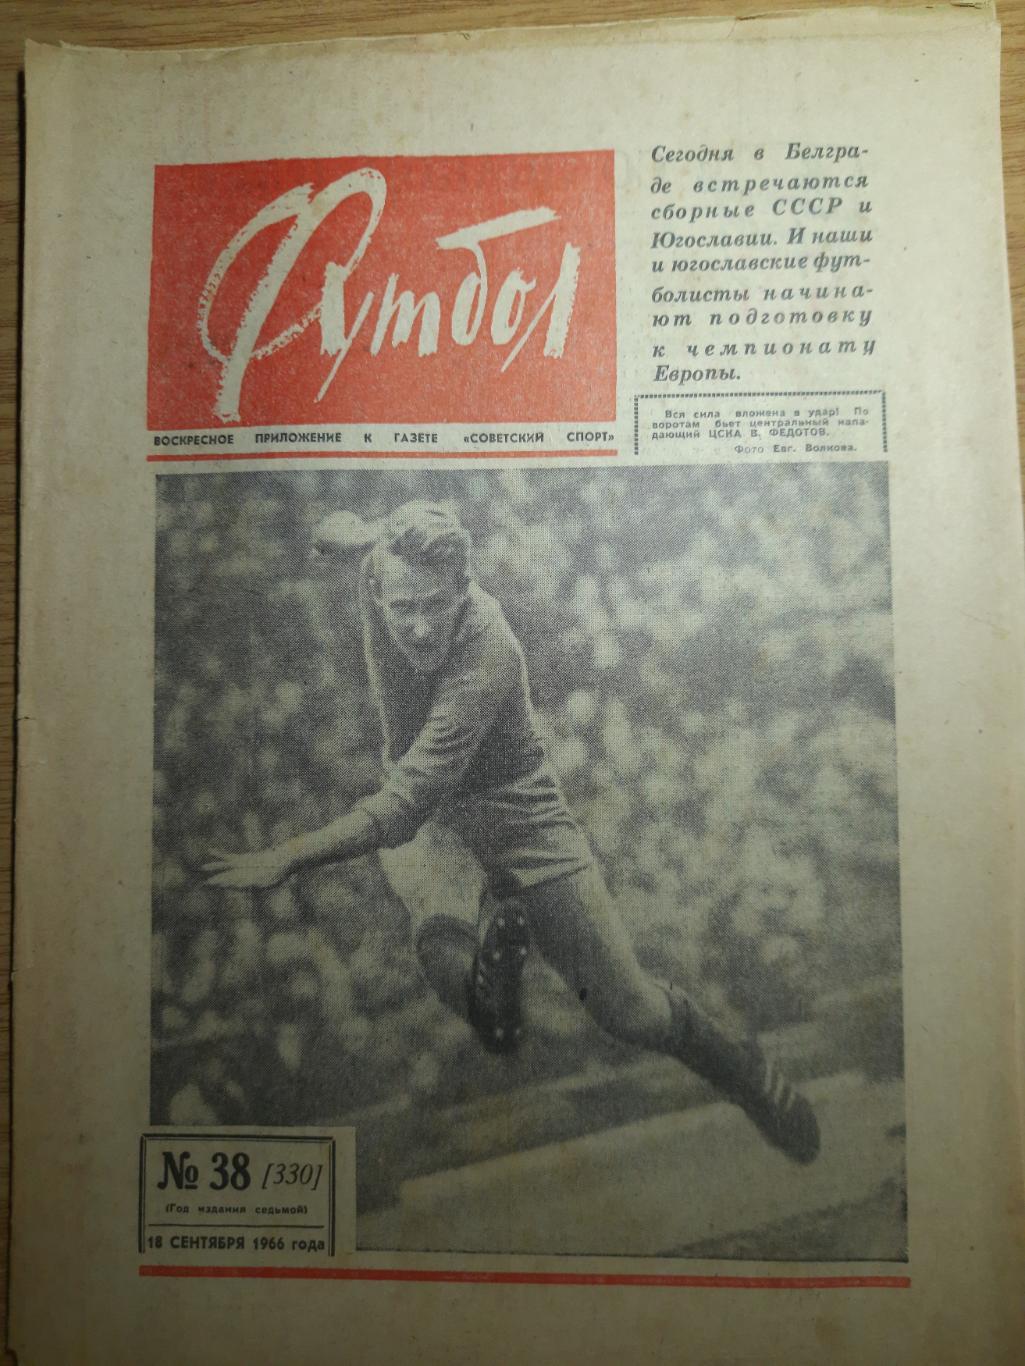 еженедельник футбол #38 1966